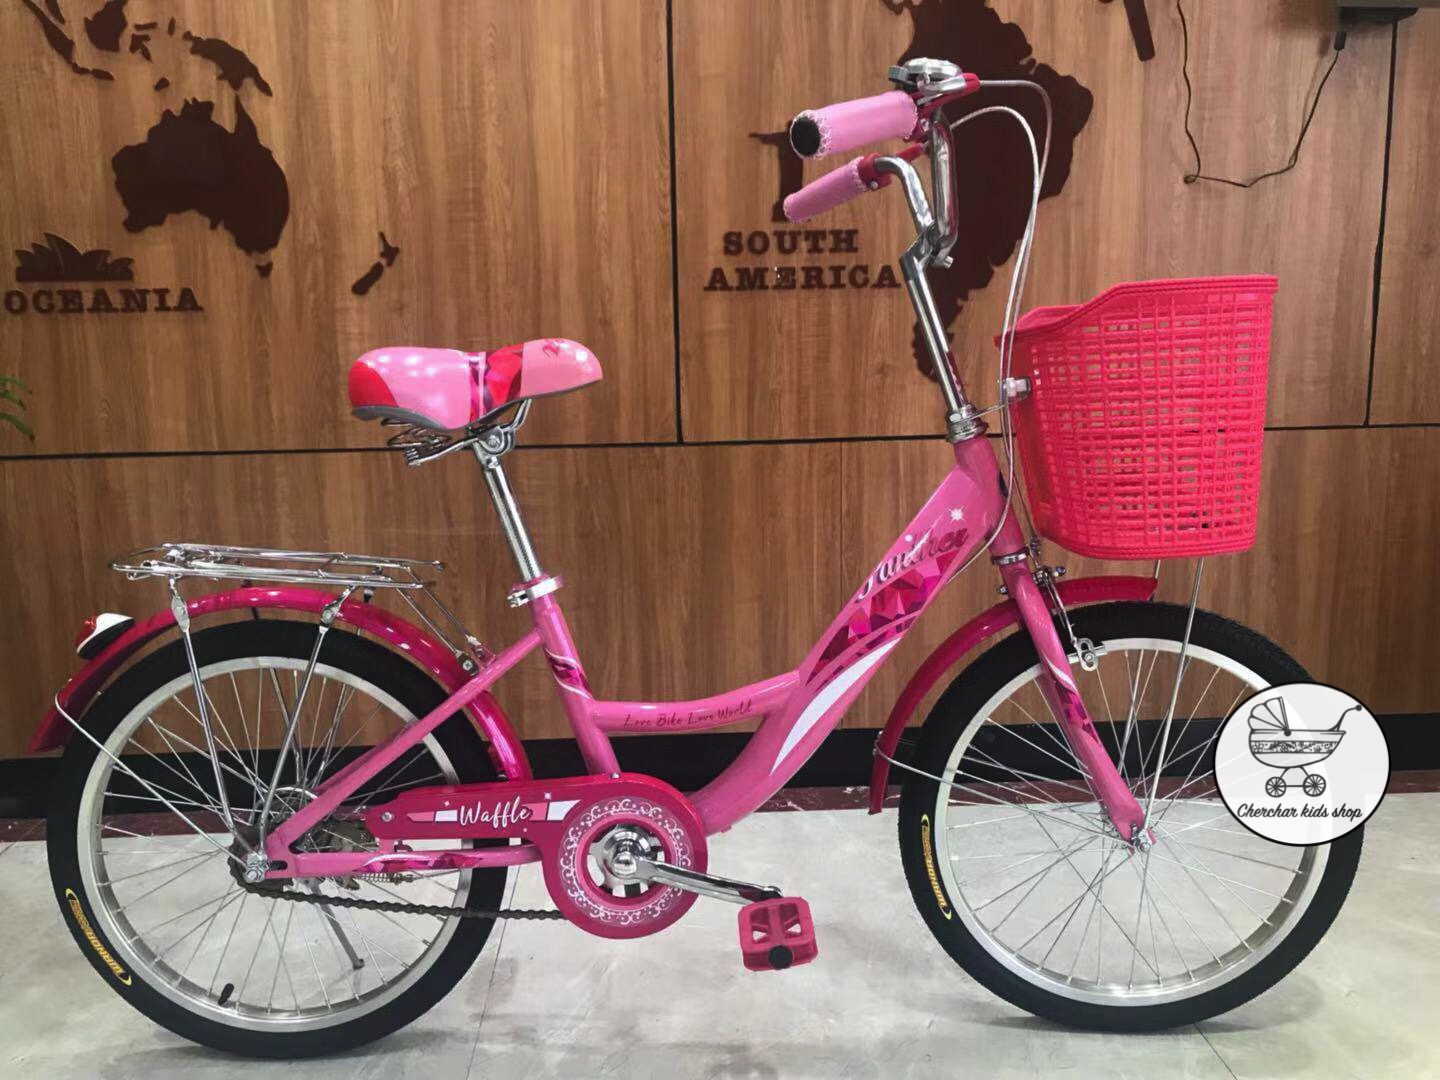 จักรยานแม่บ้านวินเทจ จักรยานทรงญี่ปุ่น ขนาด 20 นิ้ว วงล้ออัลลอยด์ ไม่เป็นสนิม ตะกร้าหวายสี